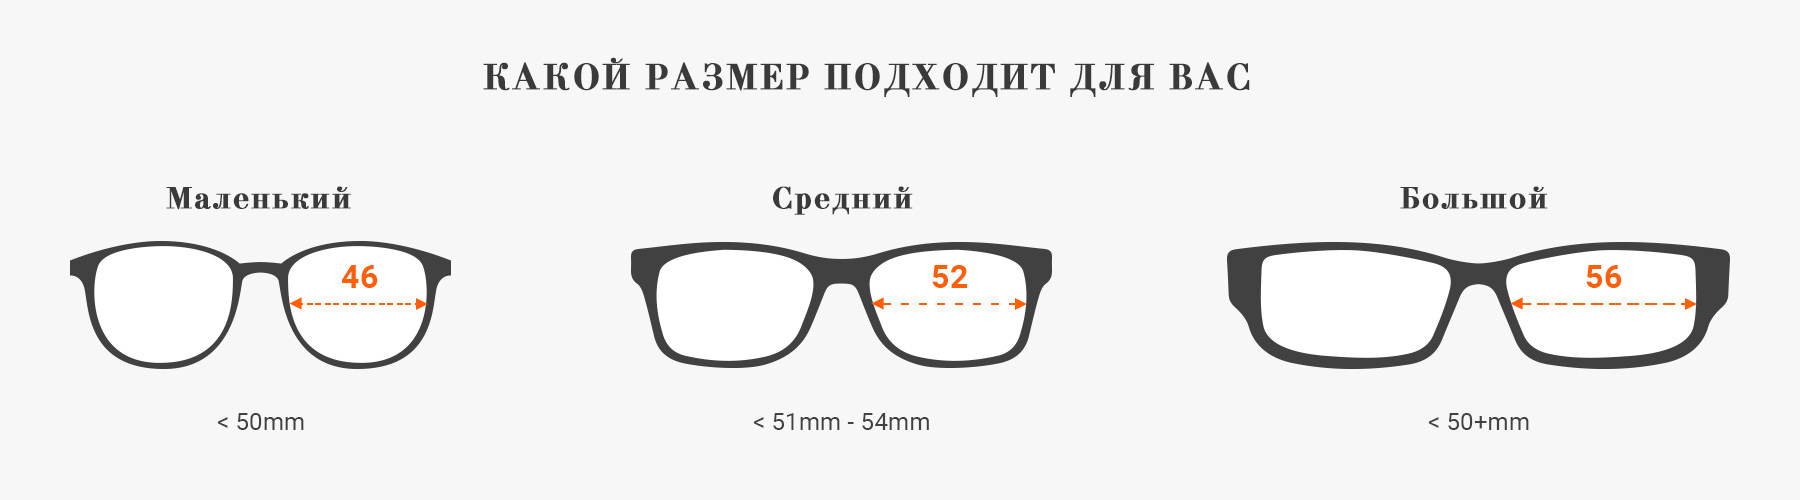 Cuanto cuesta cambiar los cristales de las gafas